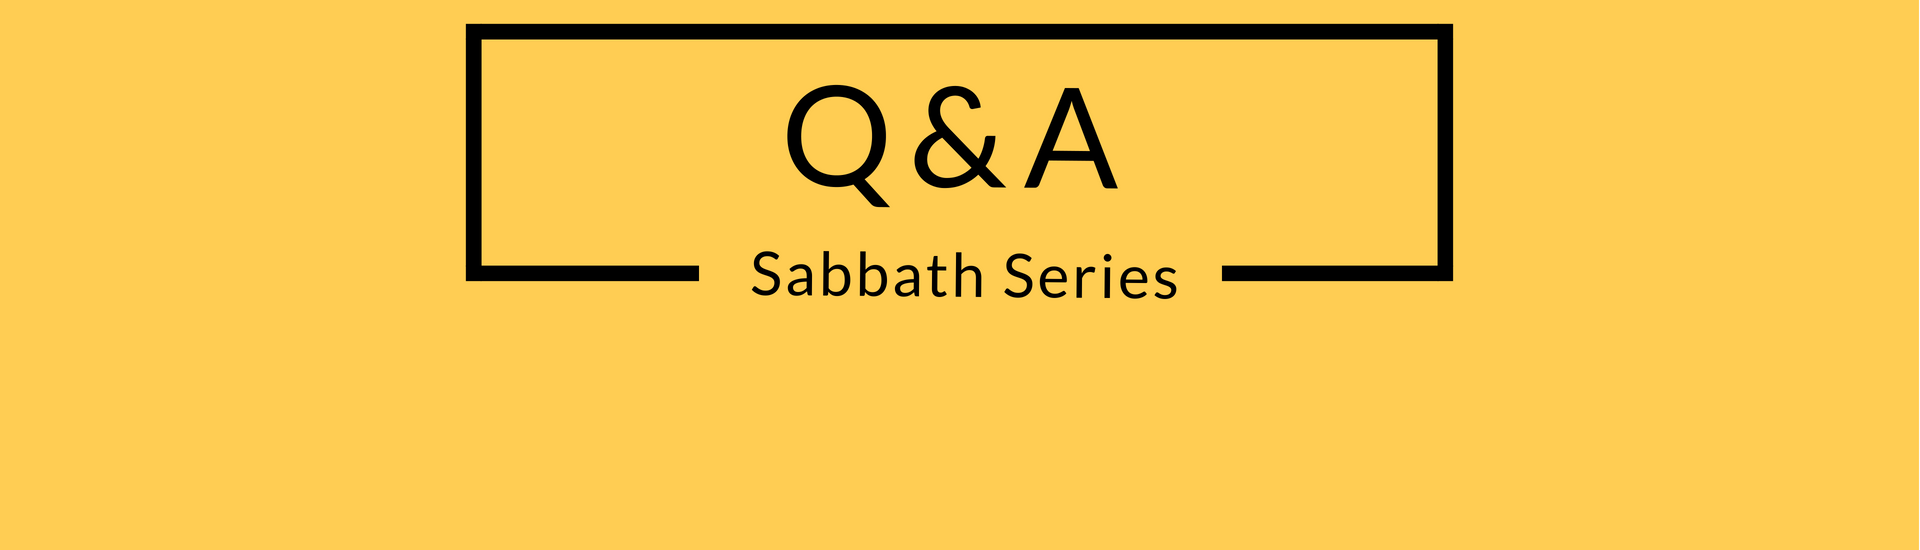 Sabbath Q&A Header